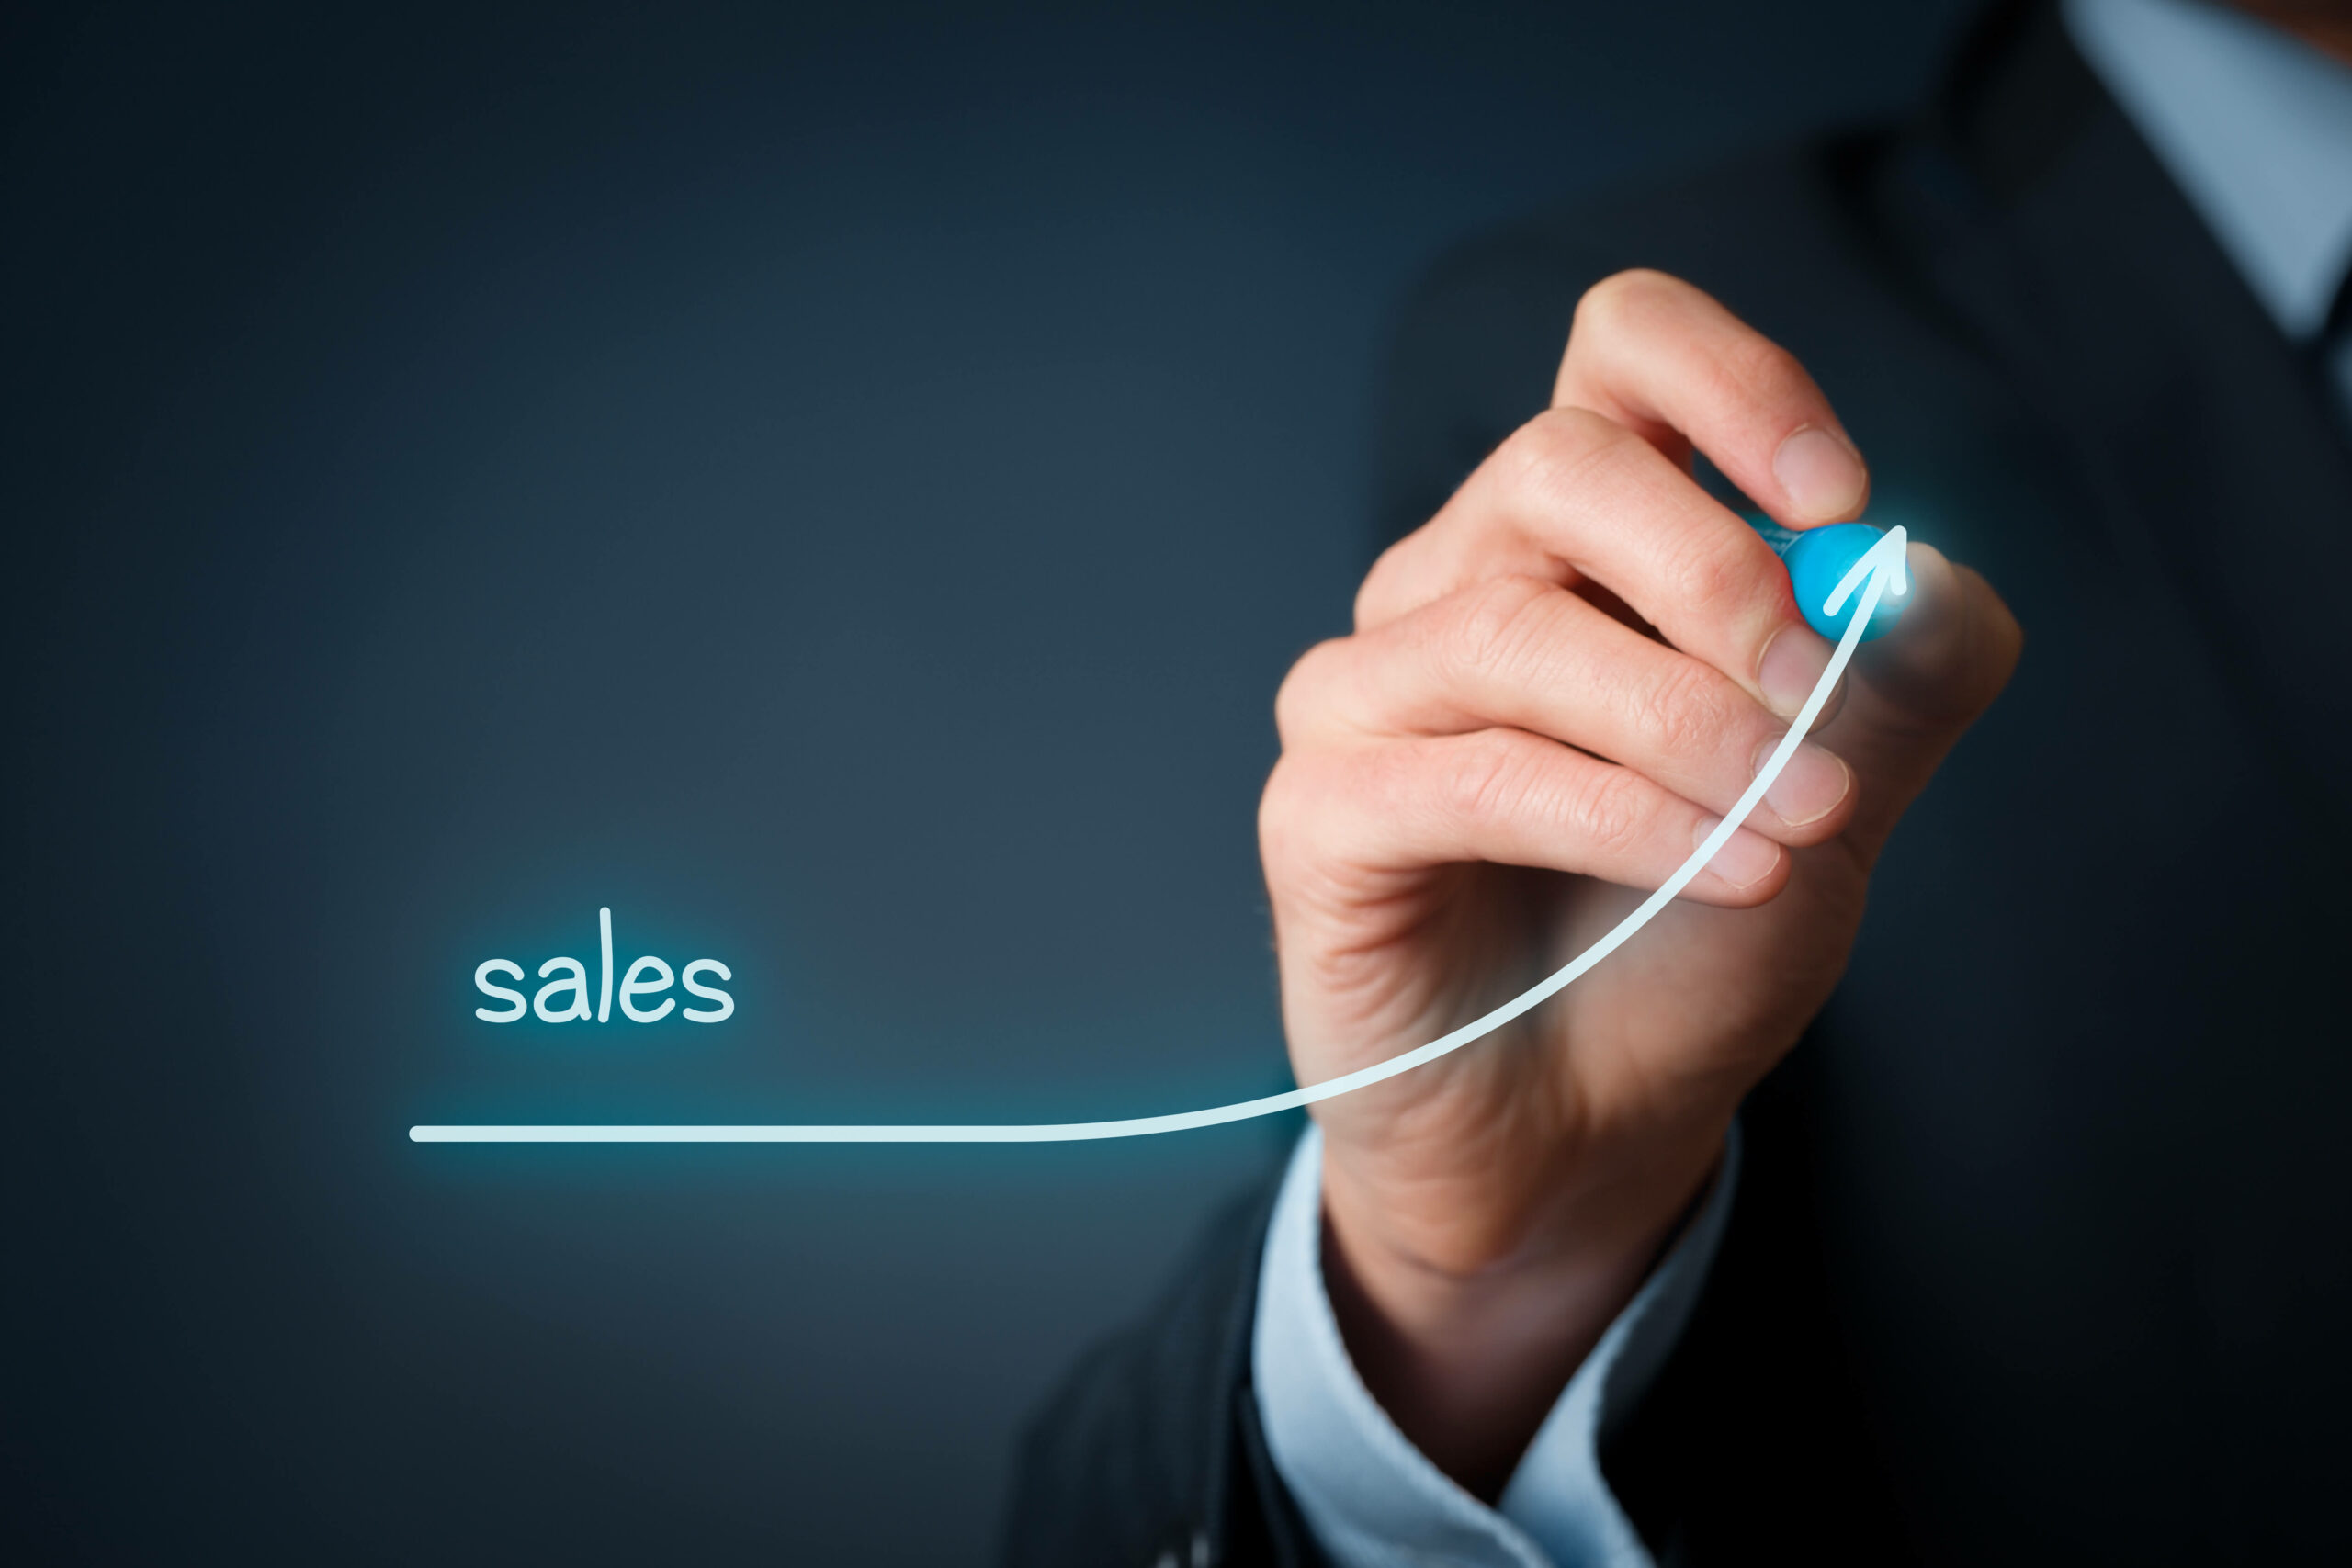 Sales enablement